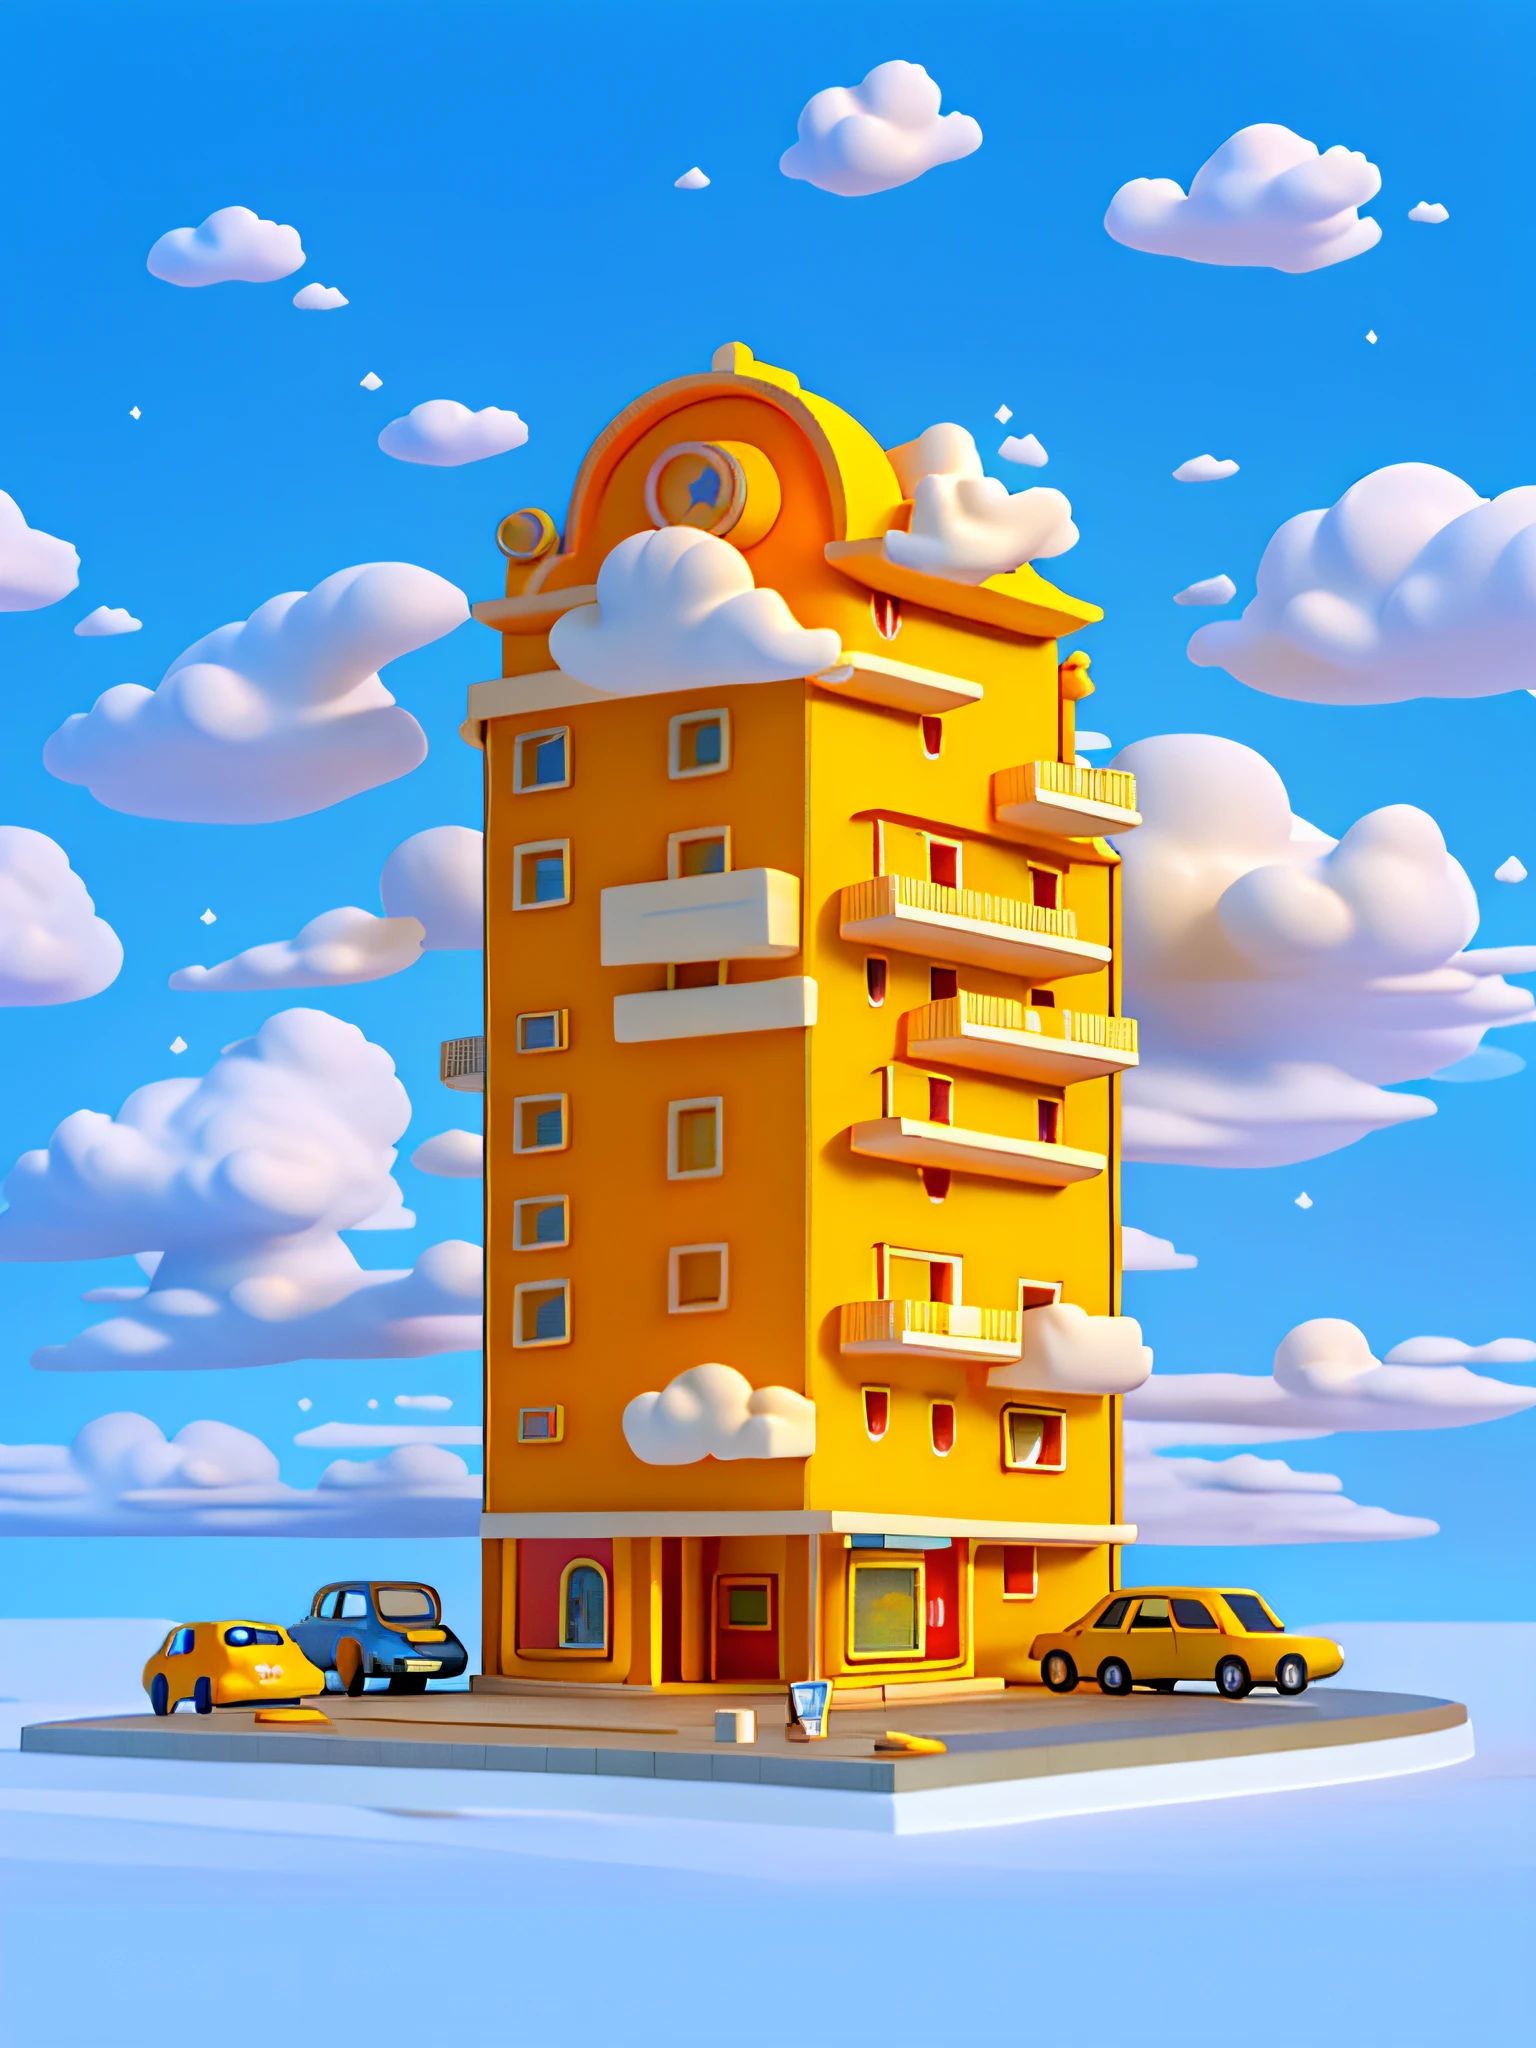 (杰作), (最好的质量), (极其详细) 简单的卡通酒店建筑, 酒店低层建筑, 玩具模型, 云, 汽车, 顶视图, 干净的背景, 淡黄色和淡橙色的建筑,